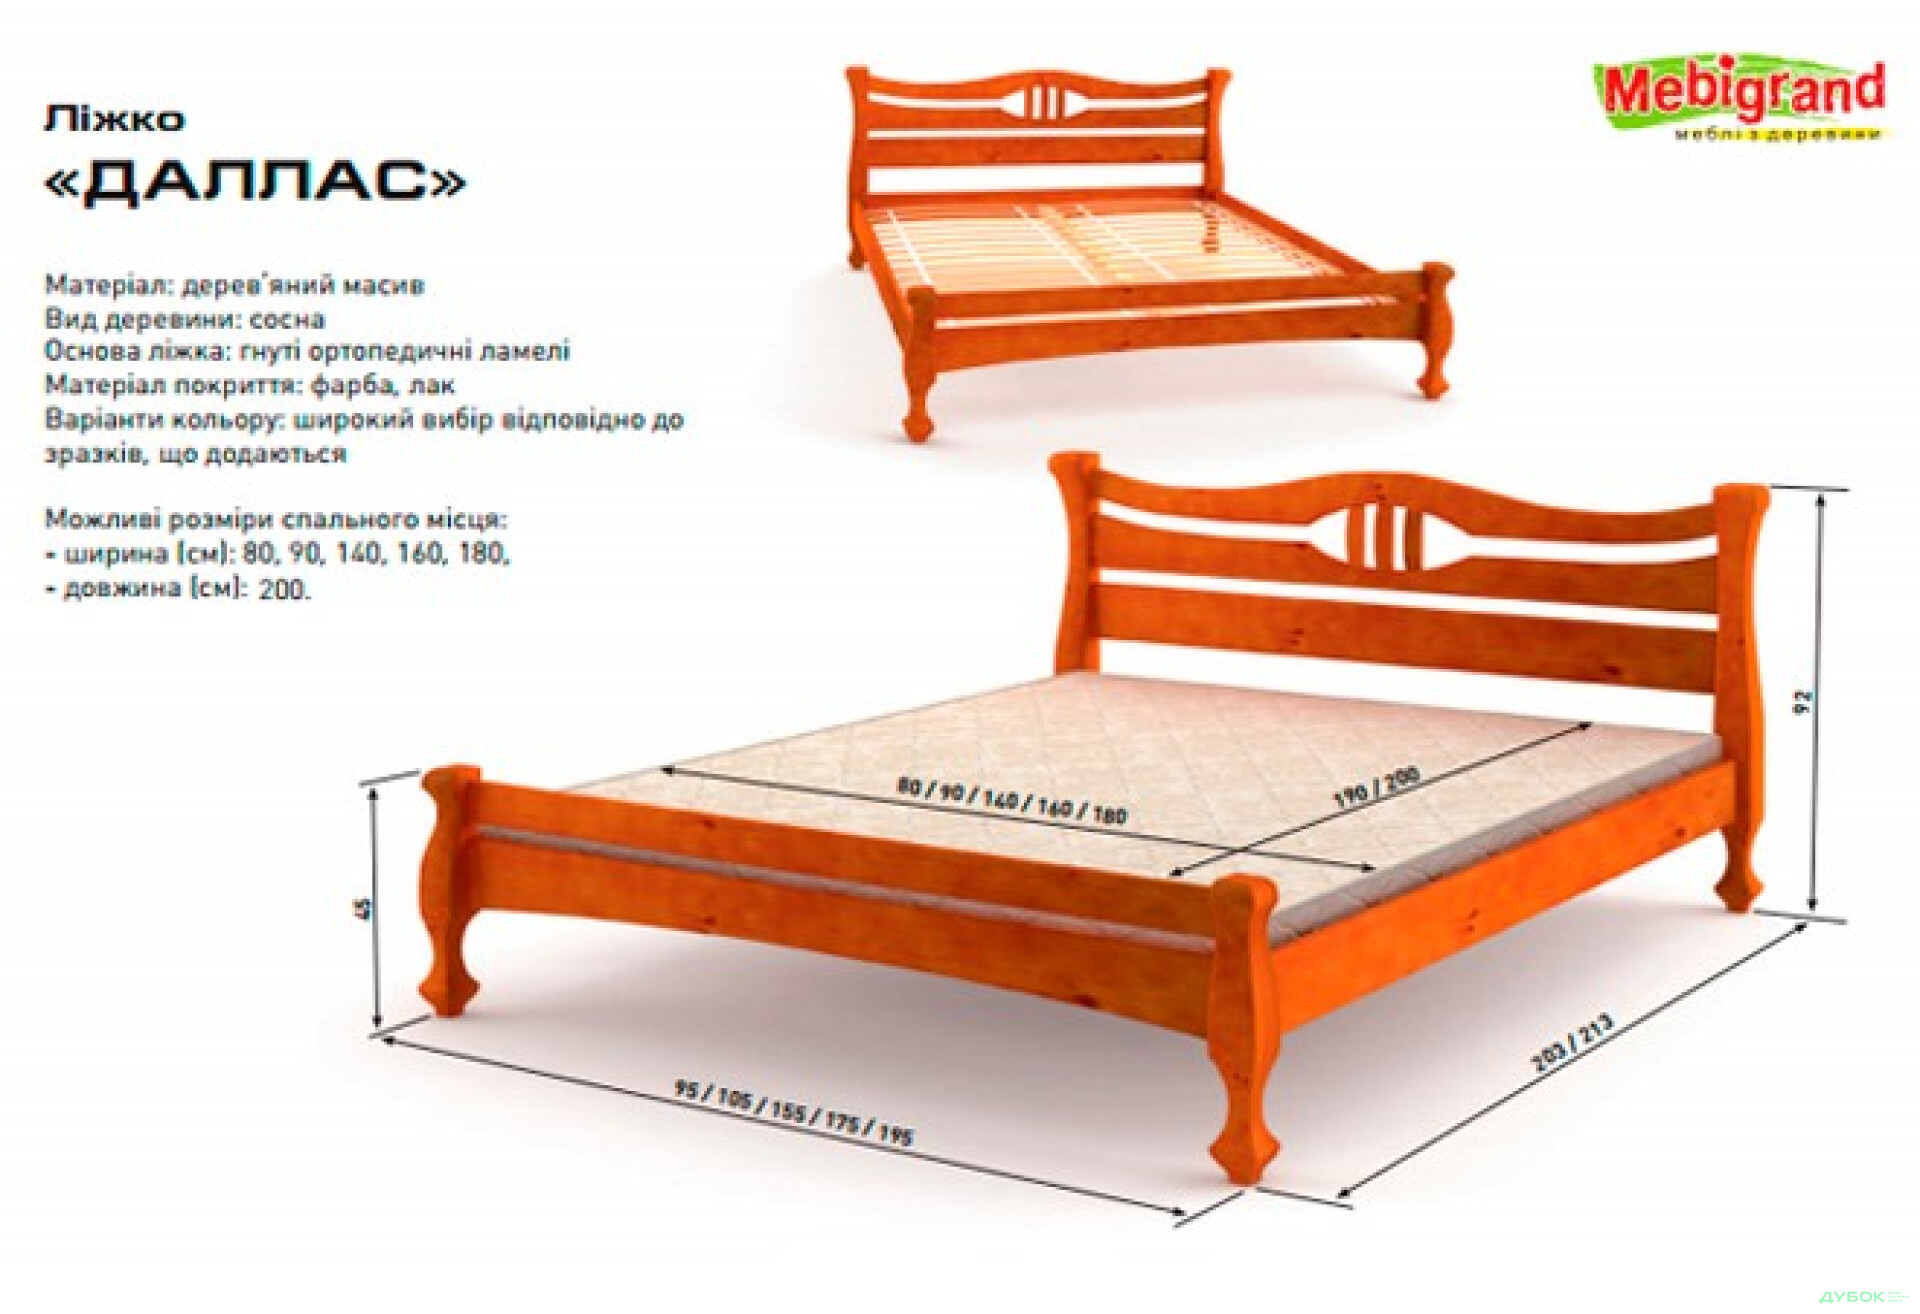 Фото 2 - Кровать двуспальная деревяная Даллас 160 Mebigrand